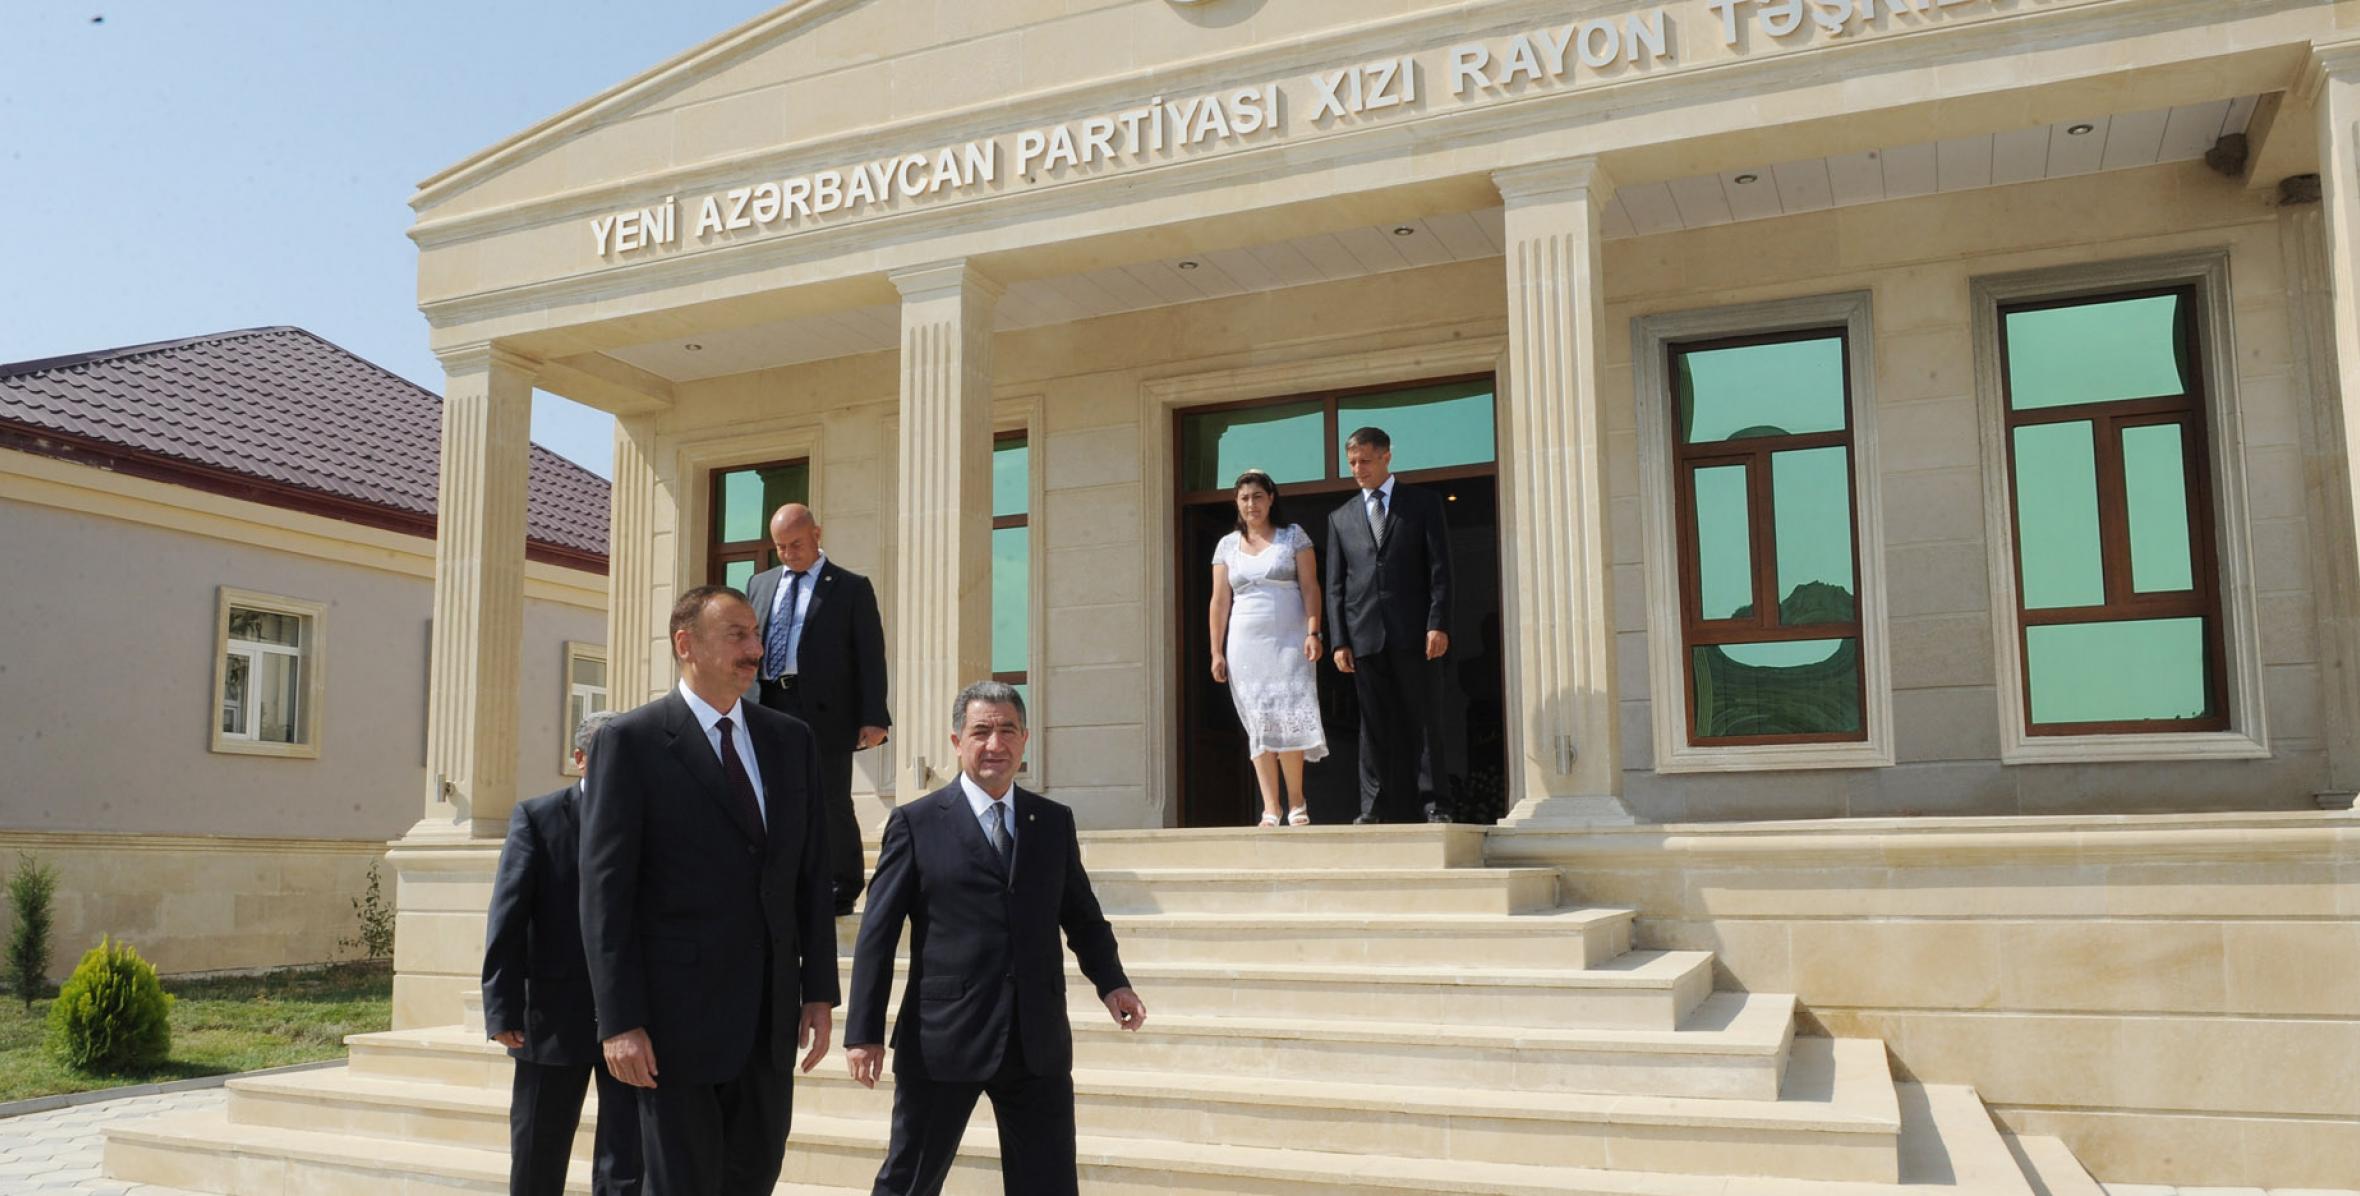 İlham Əliyev Yeni Azərbaycan Partiyası Xızı rayon təşkilatının yeni inzibati binasının açılışında iştirak etmişdir